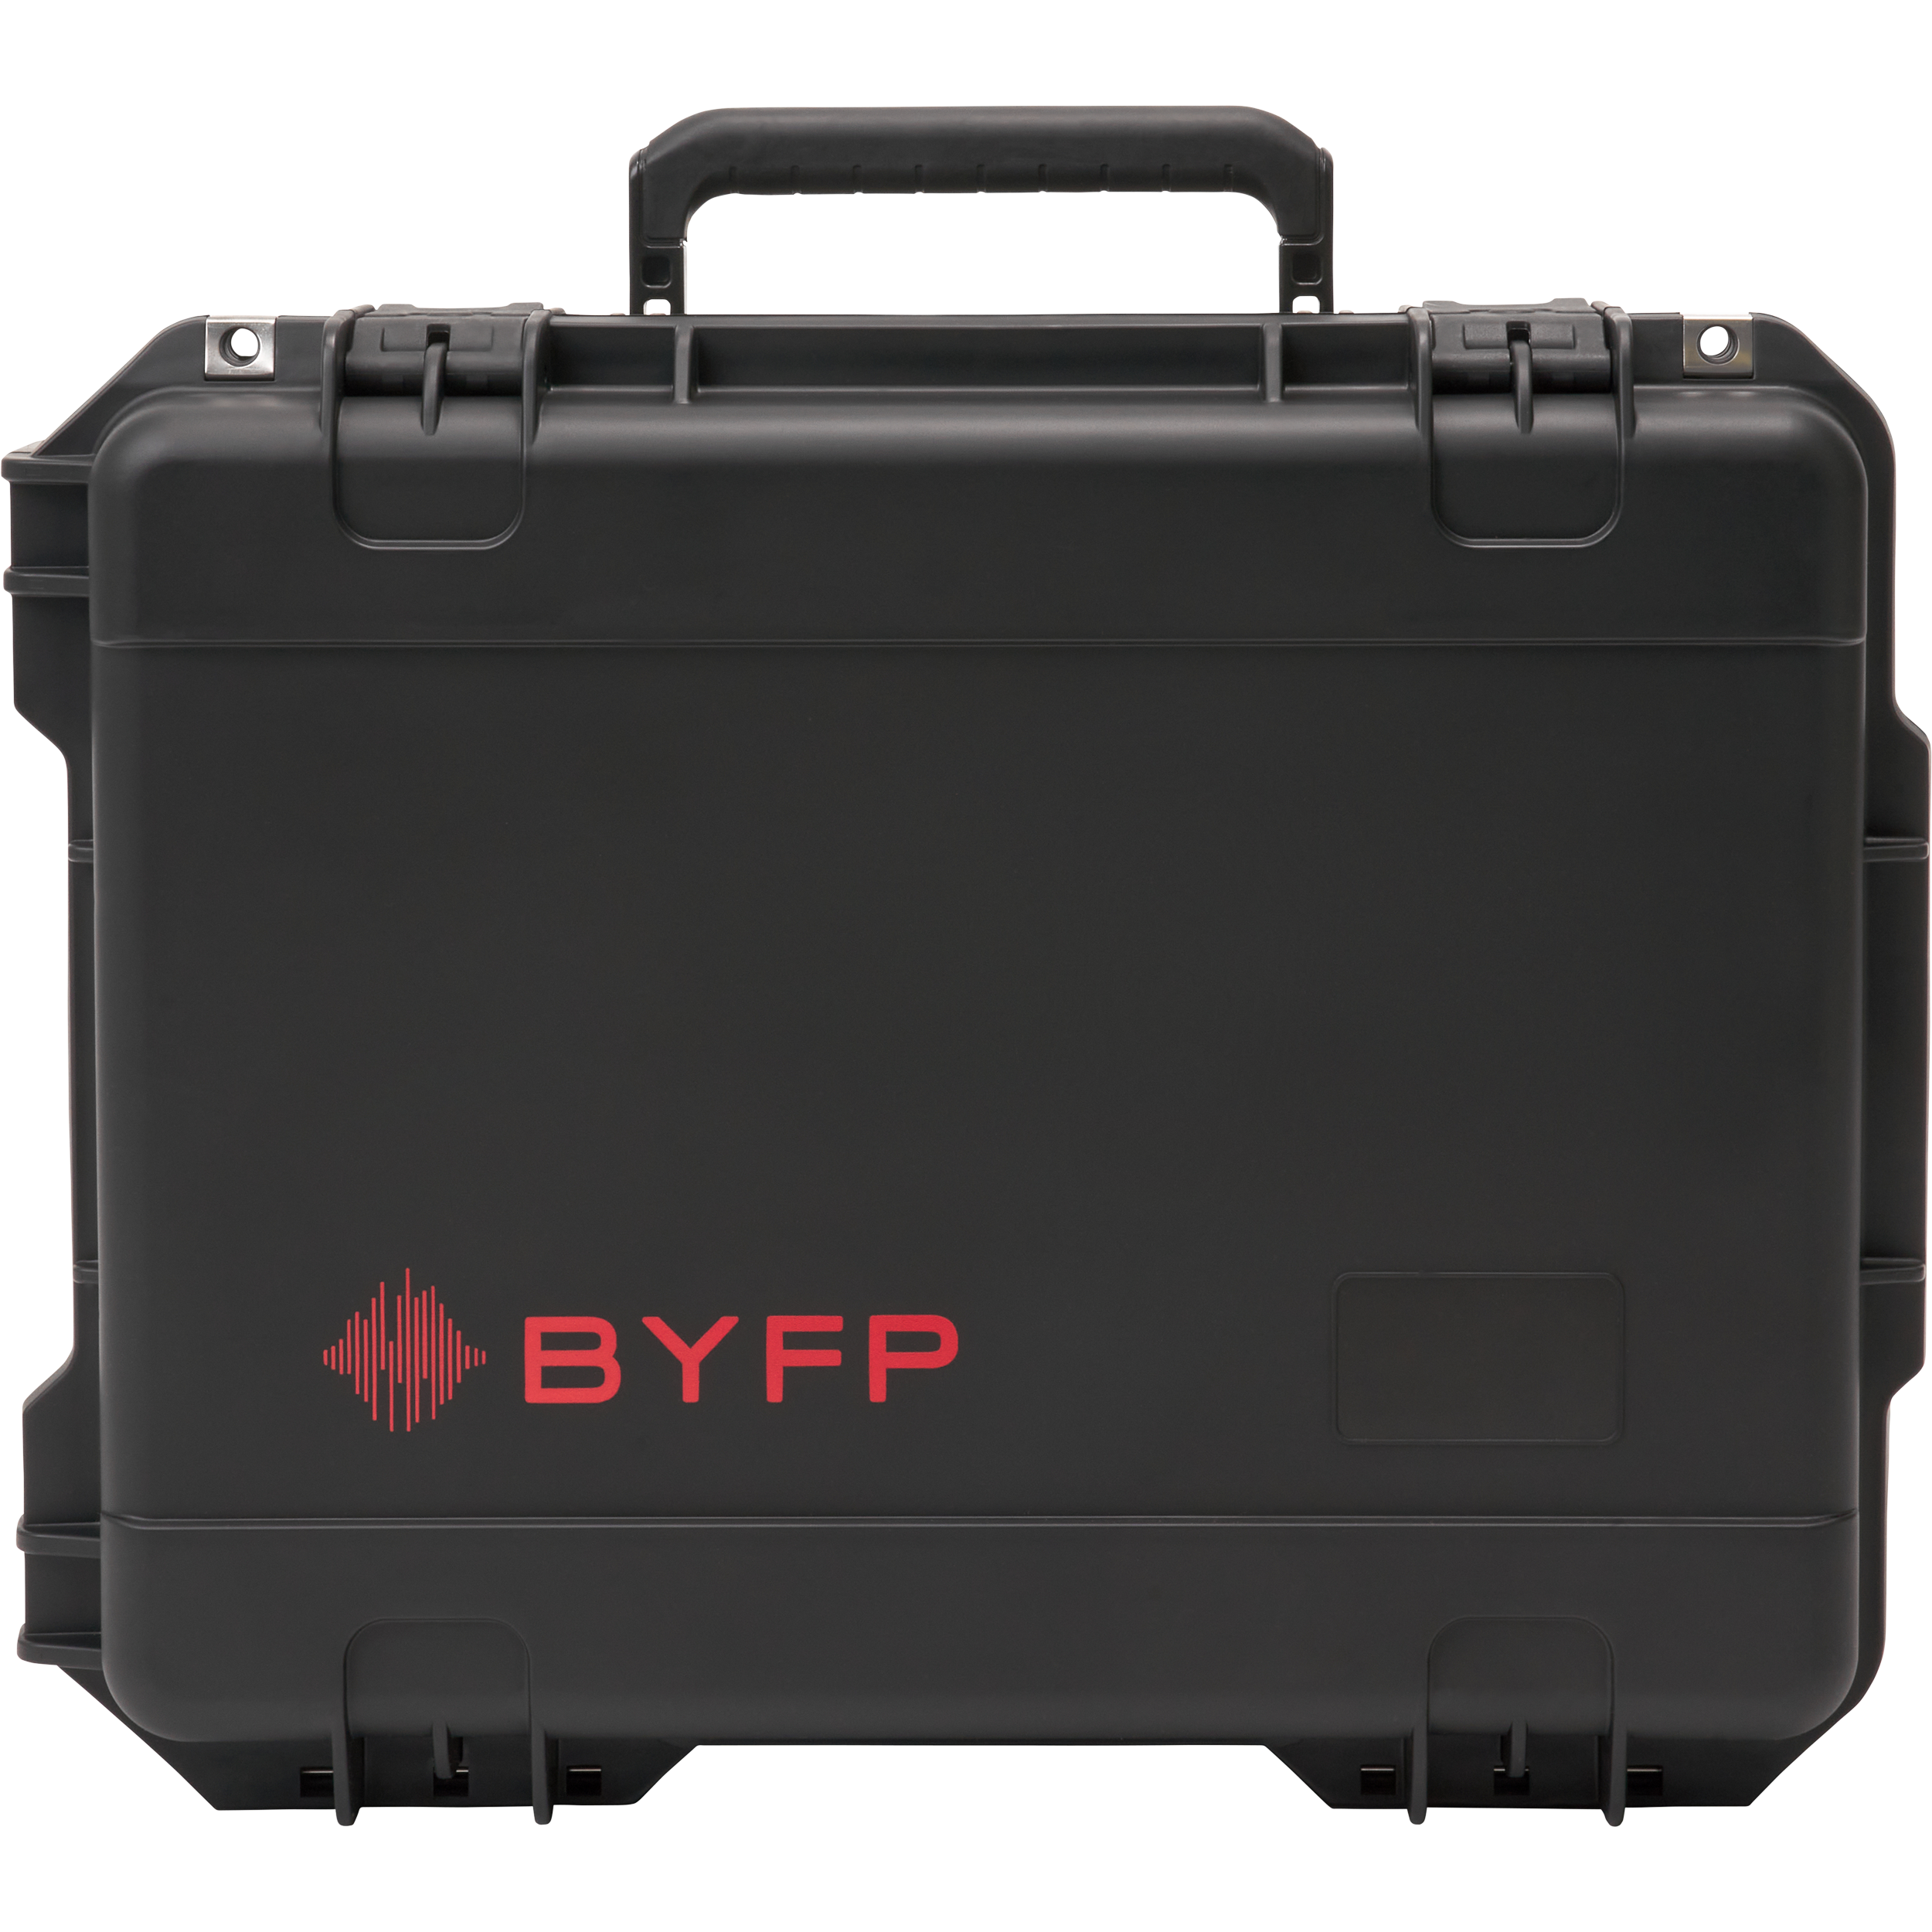 BYFP ipCase for 4x Allen & Heath ME500 Mixers